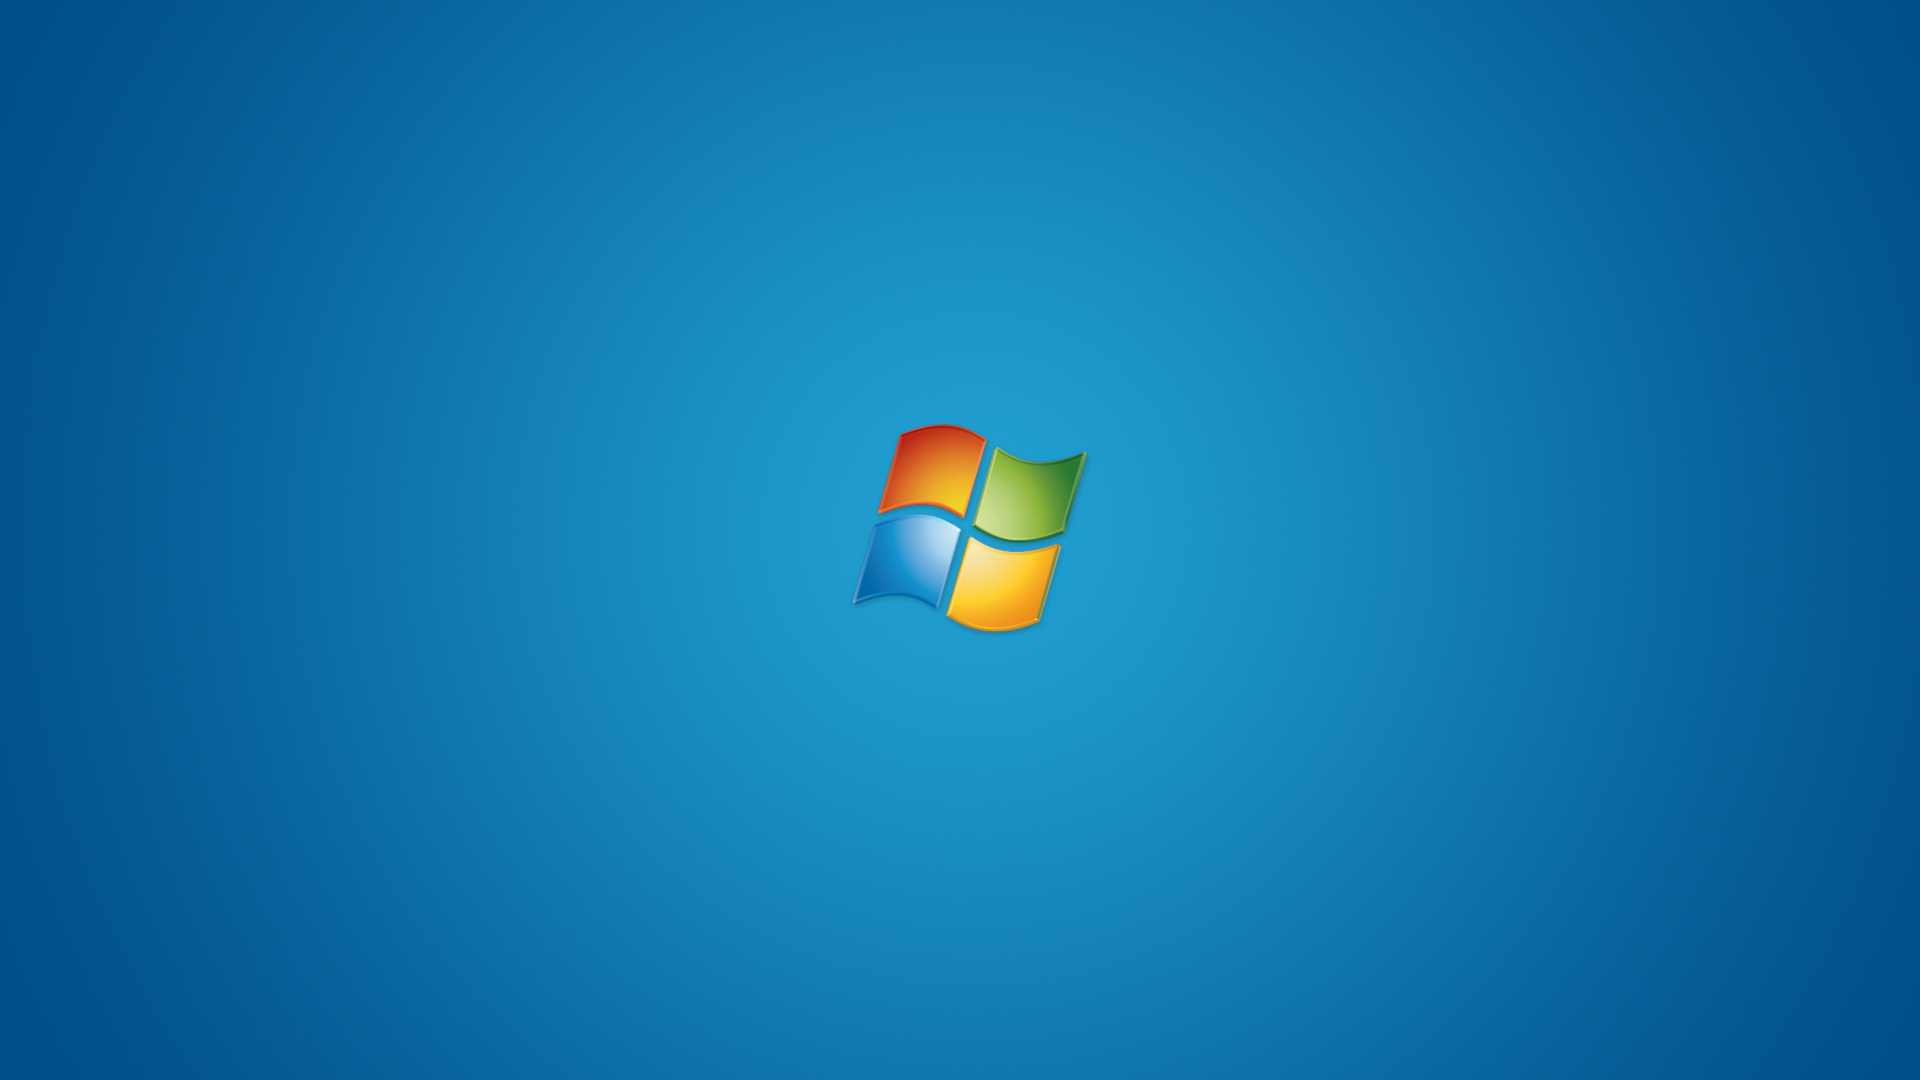 Tìm kiếm một nền tảng desktop được tối ưu hoá và miễn phí để tải về? Bạn đã tìm thấy nó! Với Microsoft Windows Desktop, bạn sẽ có được mọi thứ bạn cần để truy cập và quản lý công việc, từ văn bản đến hình ảnh. Hãy truy cập hình ảnh liên quan đến từ khóa \